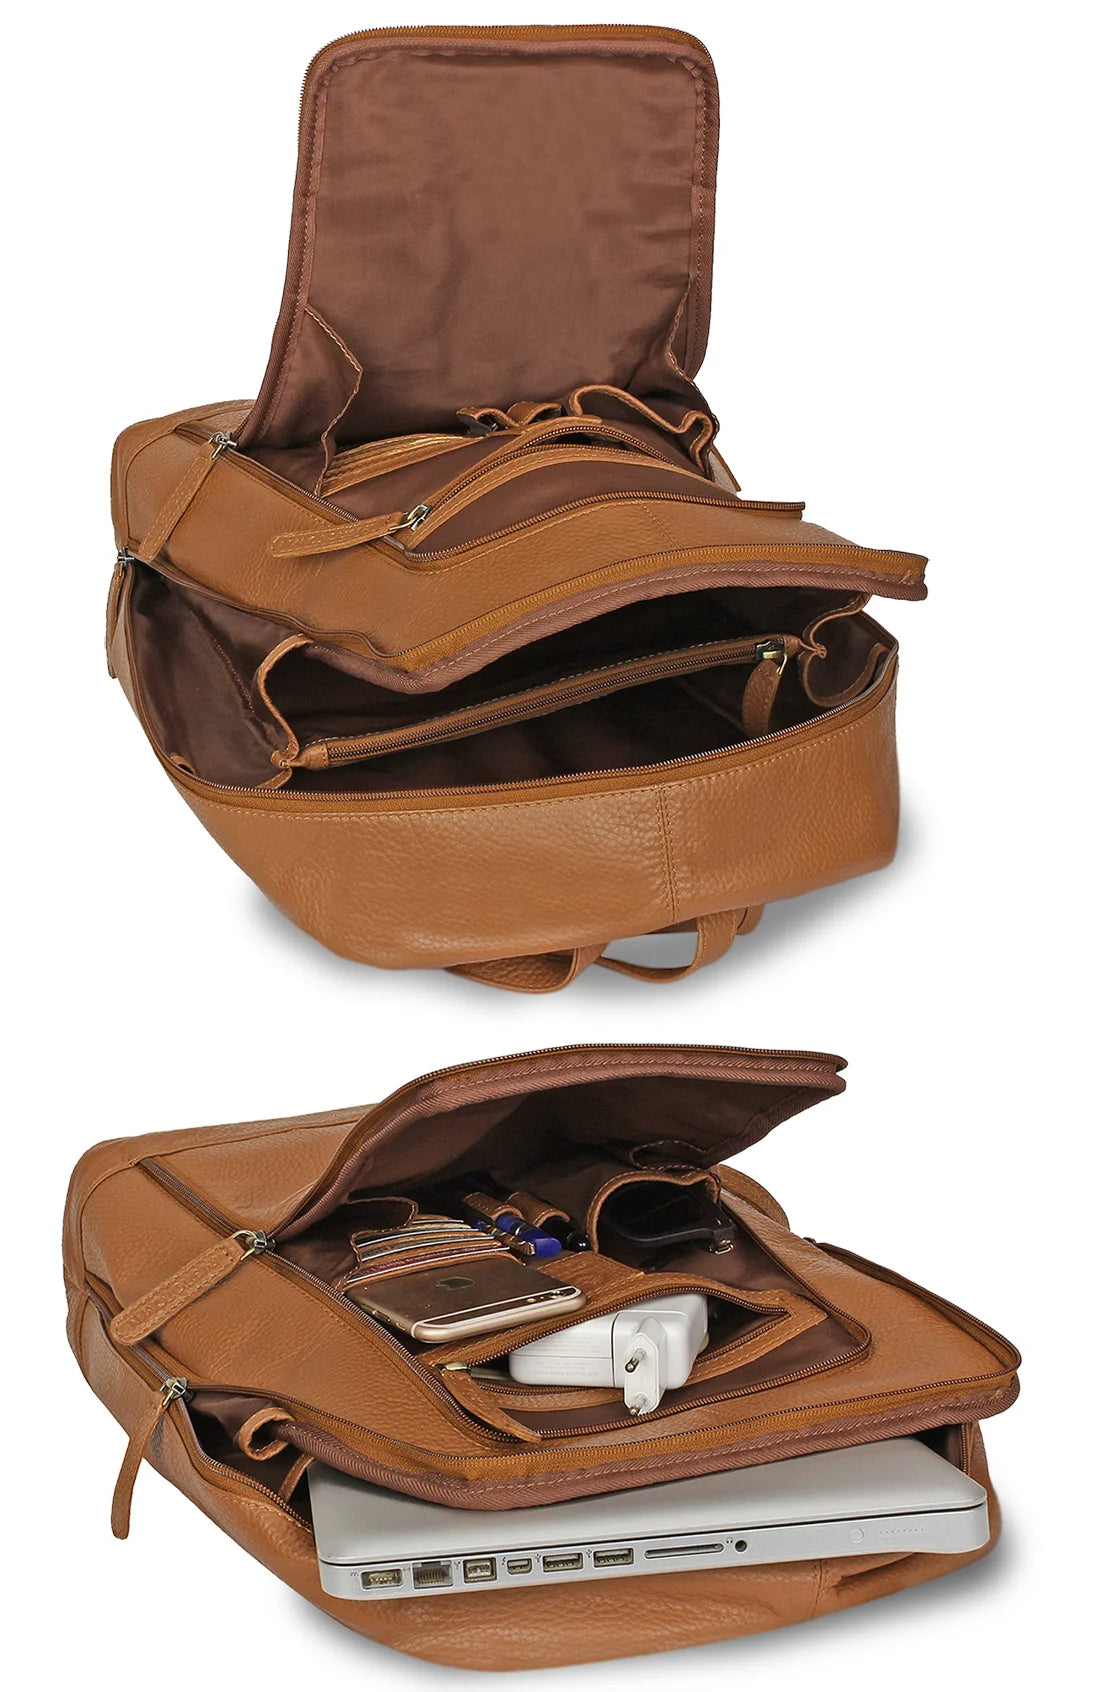 Genuine Leather Backpack Travel Rucksack Shoulder Bag